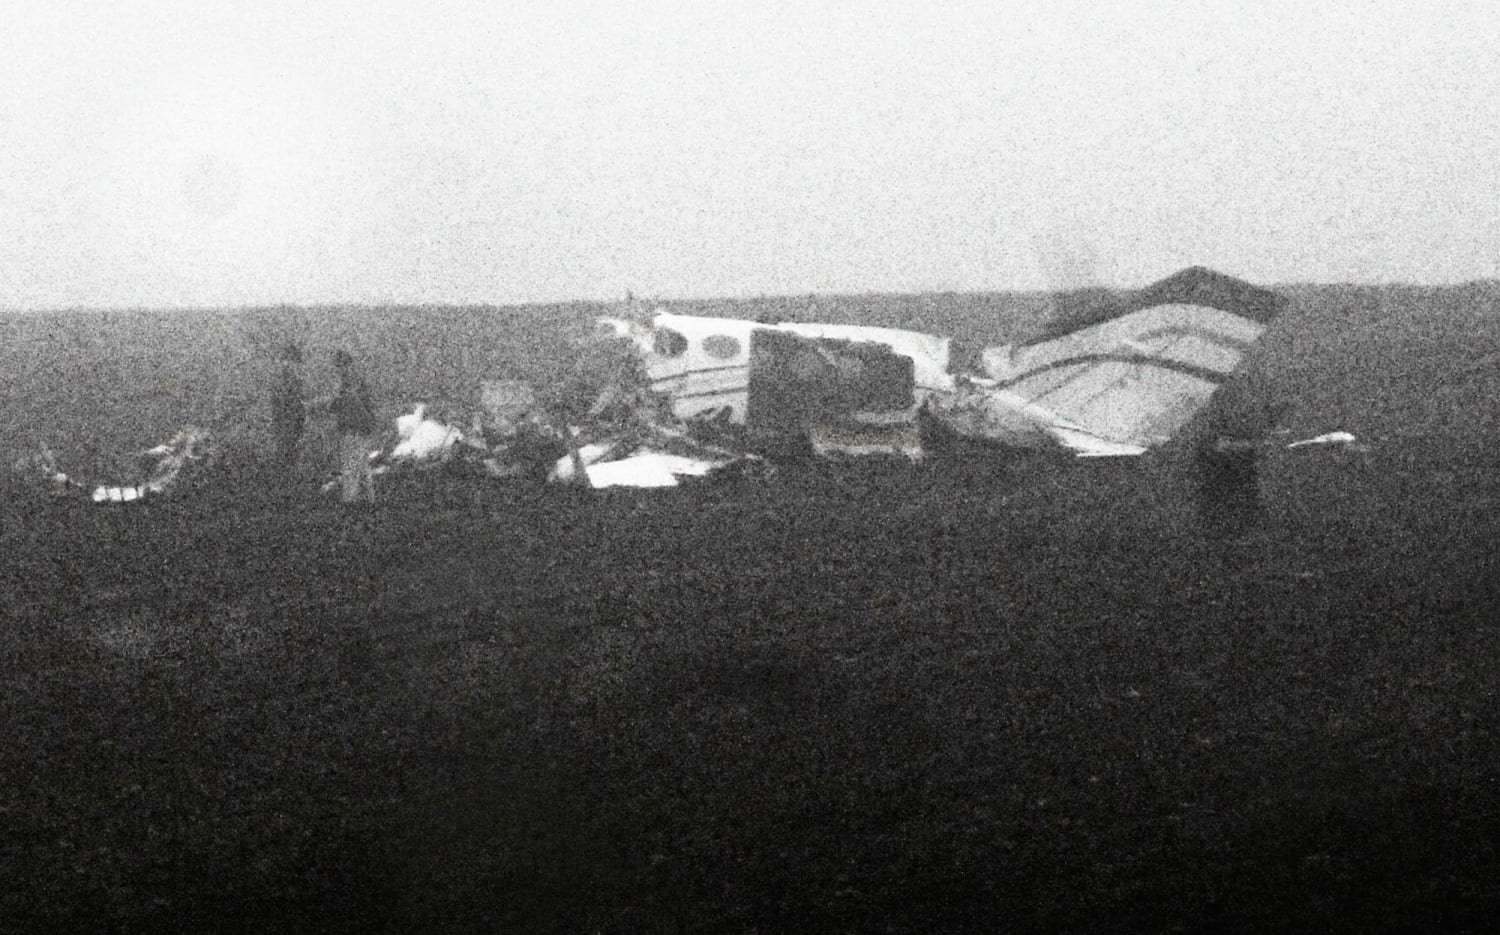 К чему снится самолет взорвался. Светлогорск детский сад катастрофа 1972. Катастрофа АН-24 В Светлогорске. Катастрофа АН-24 В Светлогорске фото. Военный самолёт упал на детский сад в 1972 году.